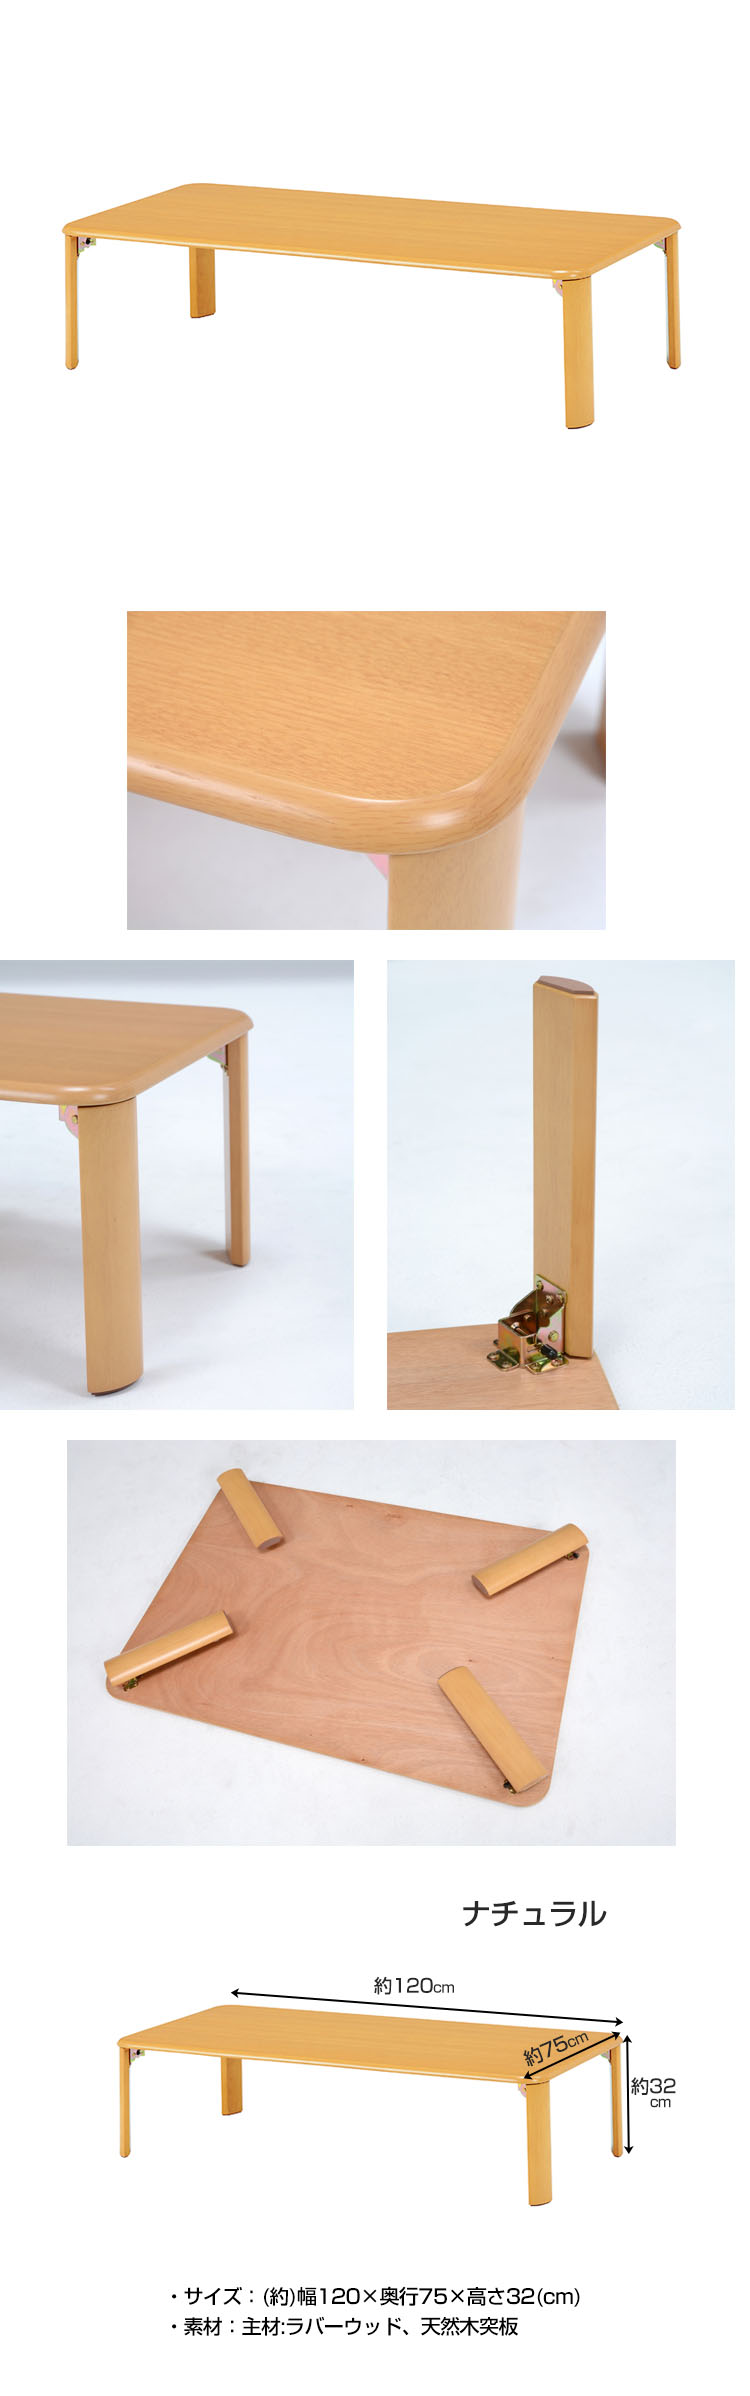 新品折れ脚 リビングテーブル 120cm×75cm 脚 折りたたみ ローテーブル ちゃぶ台 木製 おしゃれ テーブル 座卓、ちゃぶ台